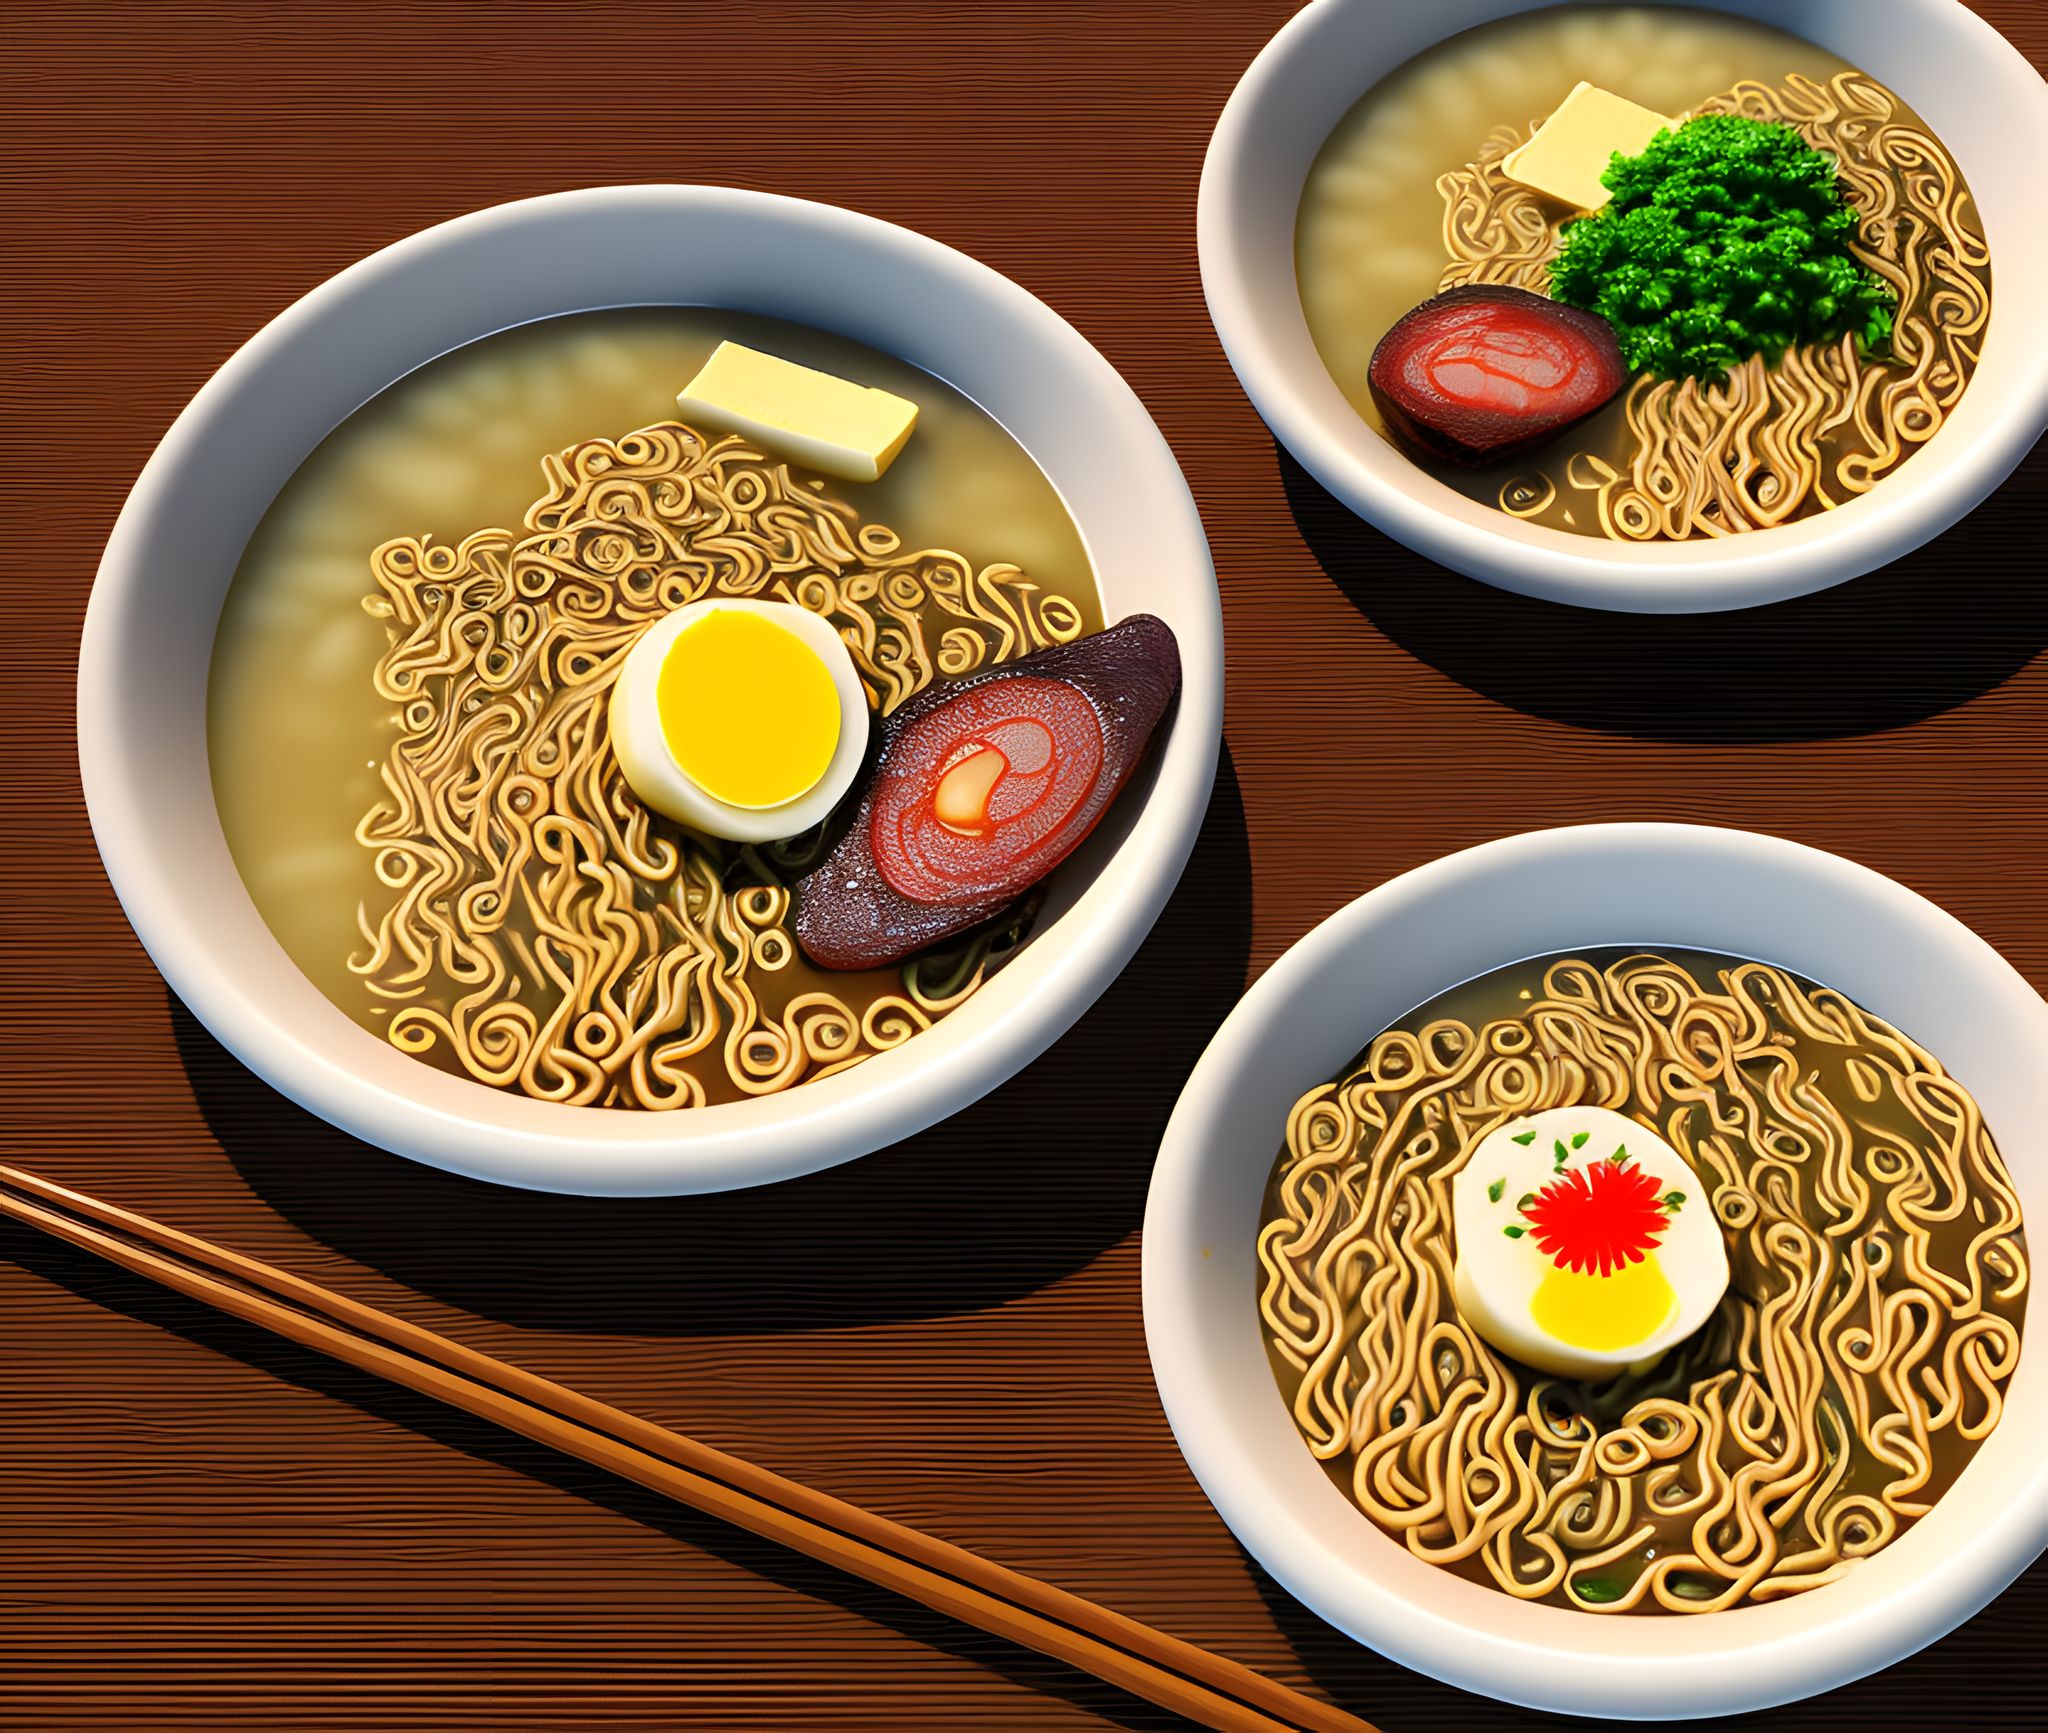 Butter-ramen-art-work-cgi-art-Japanese-food-delicious-restaurant-cooking-8d47